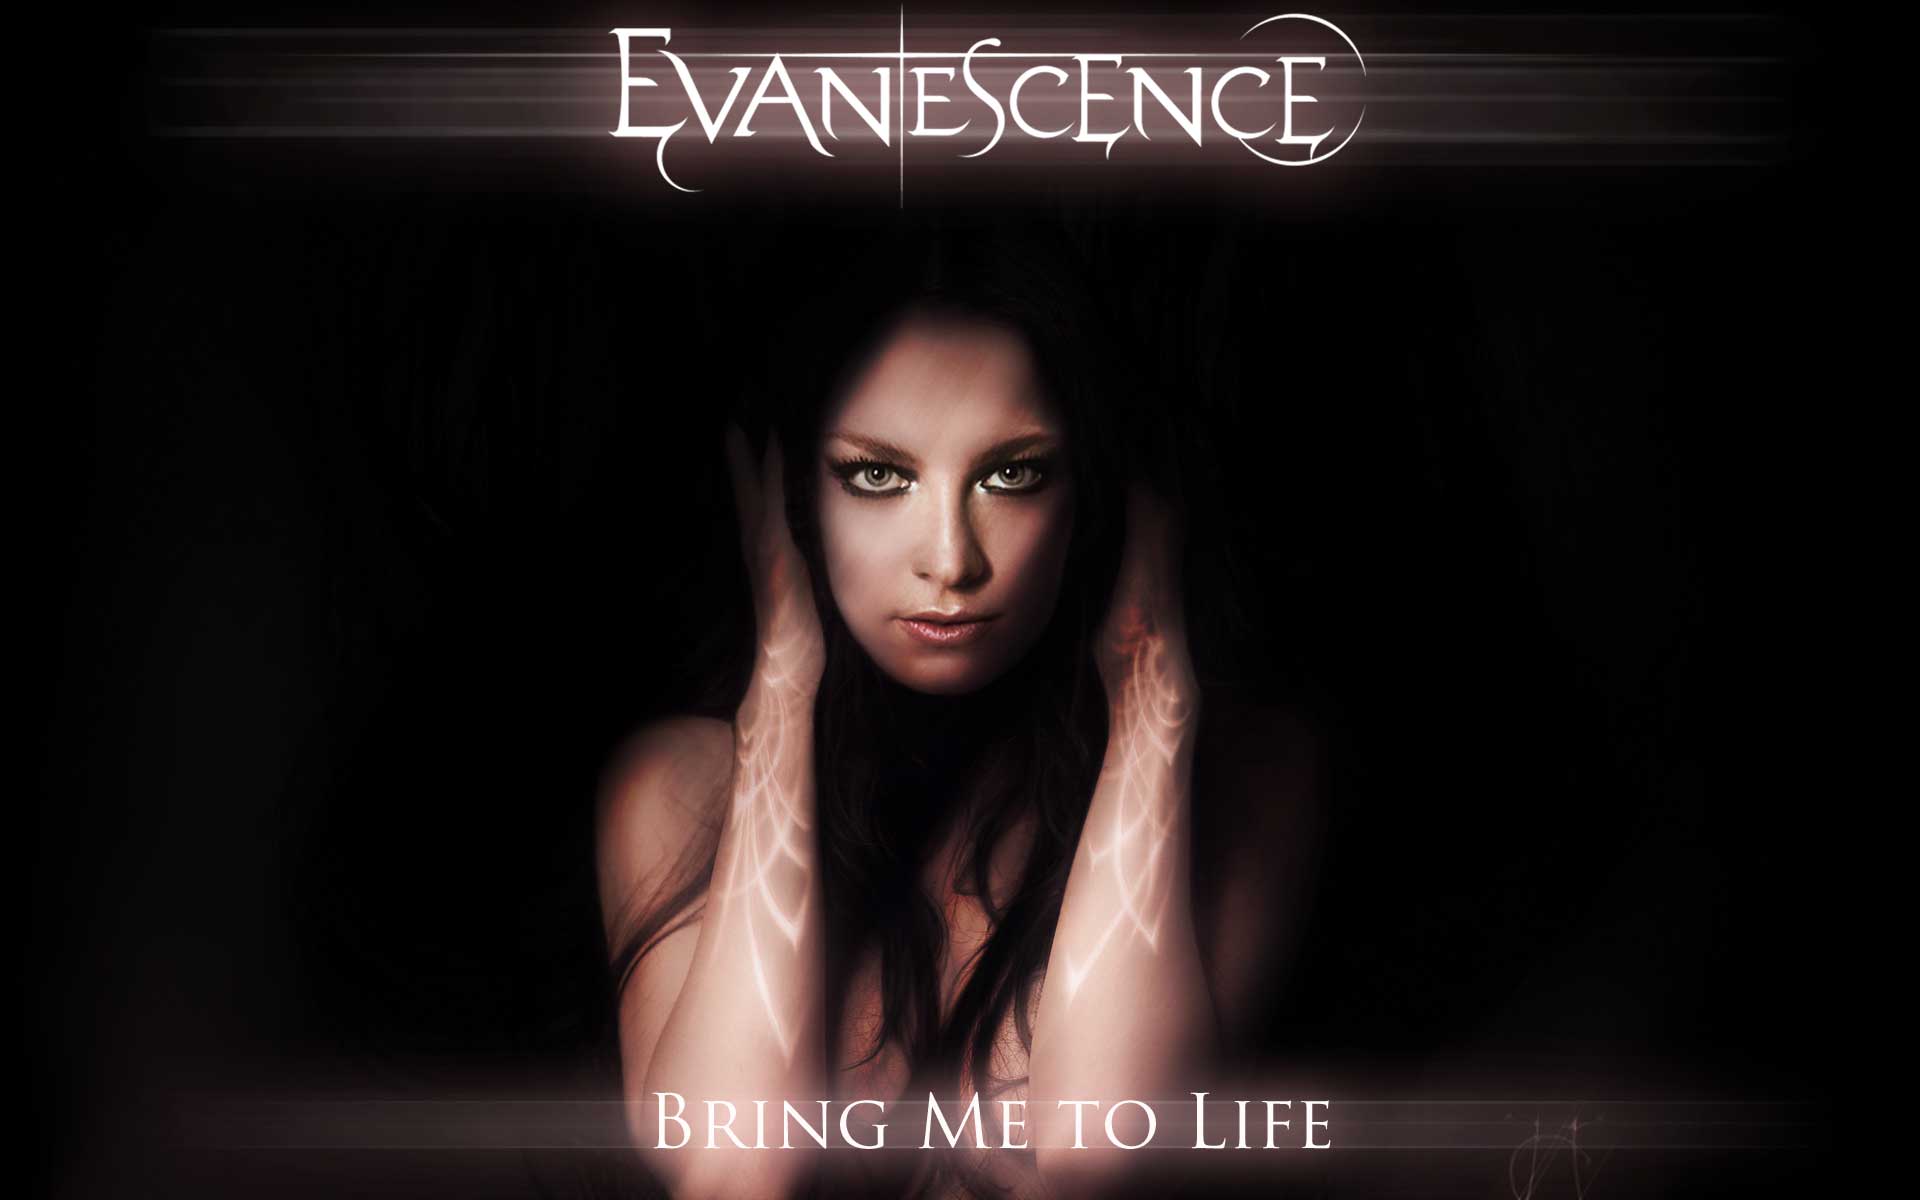 Песня бринг ми ту лайф. Evanescence. Эми ли Evanescence. Evanescence 2003. Amy Lee 2003.